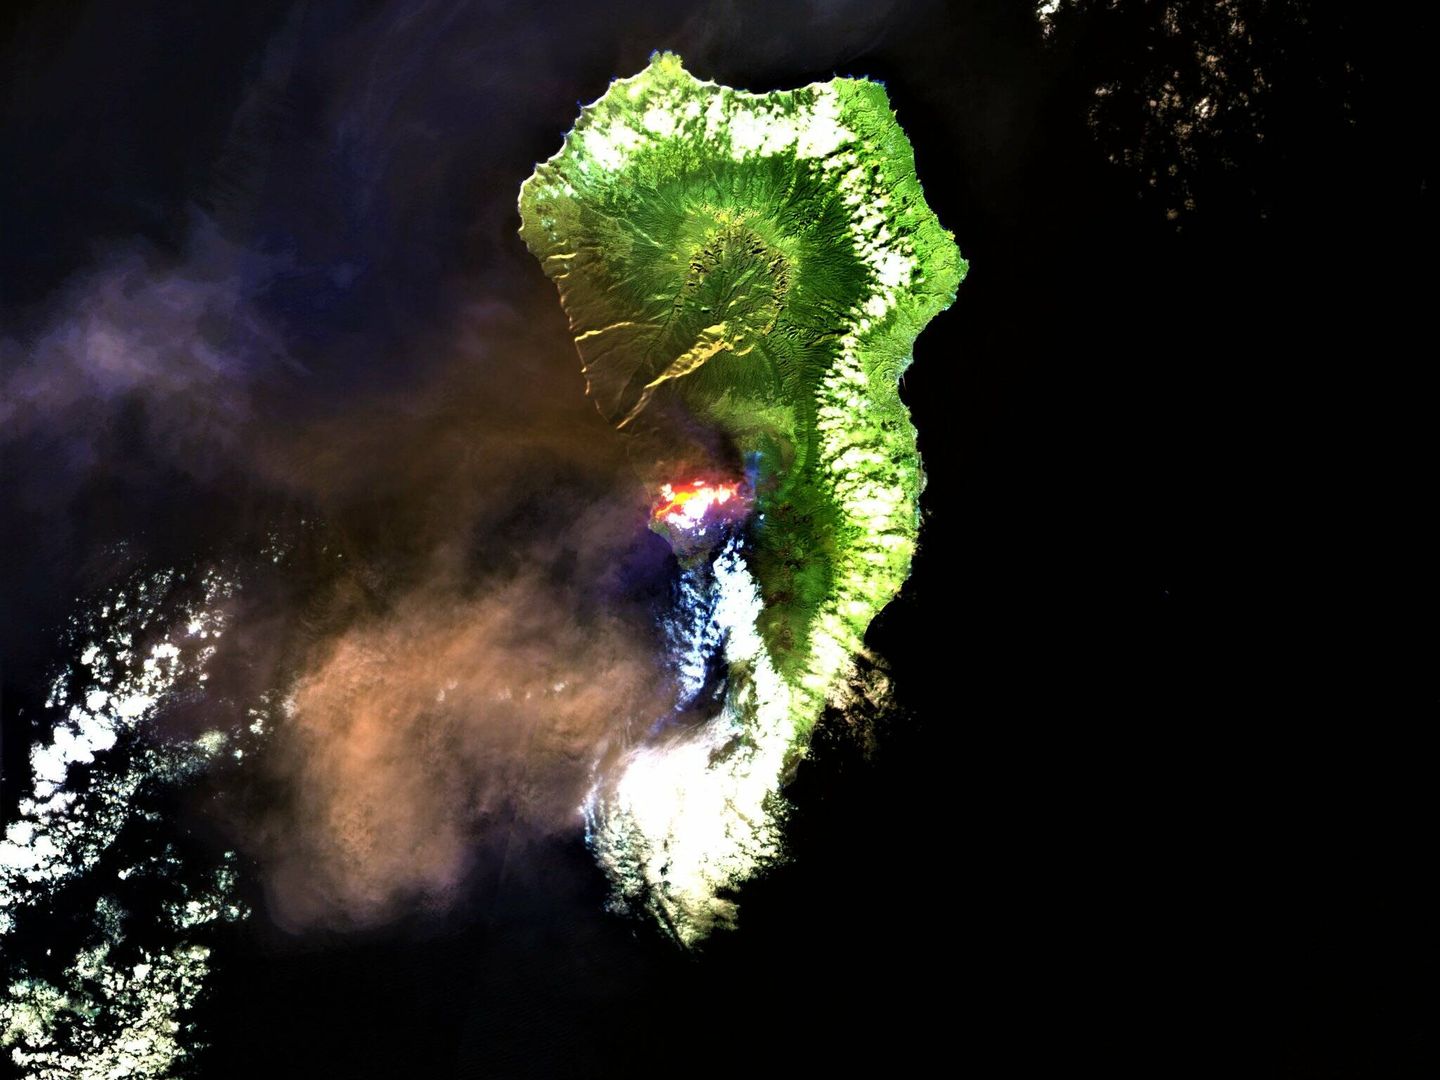 Imagen de La Palma el pasado 30 de octubre captada por el satélite Sentinel 2, en la que se observa la nube de cenizas volcánicas. (Via @ICaballero28)